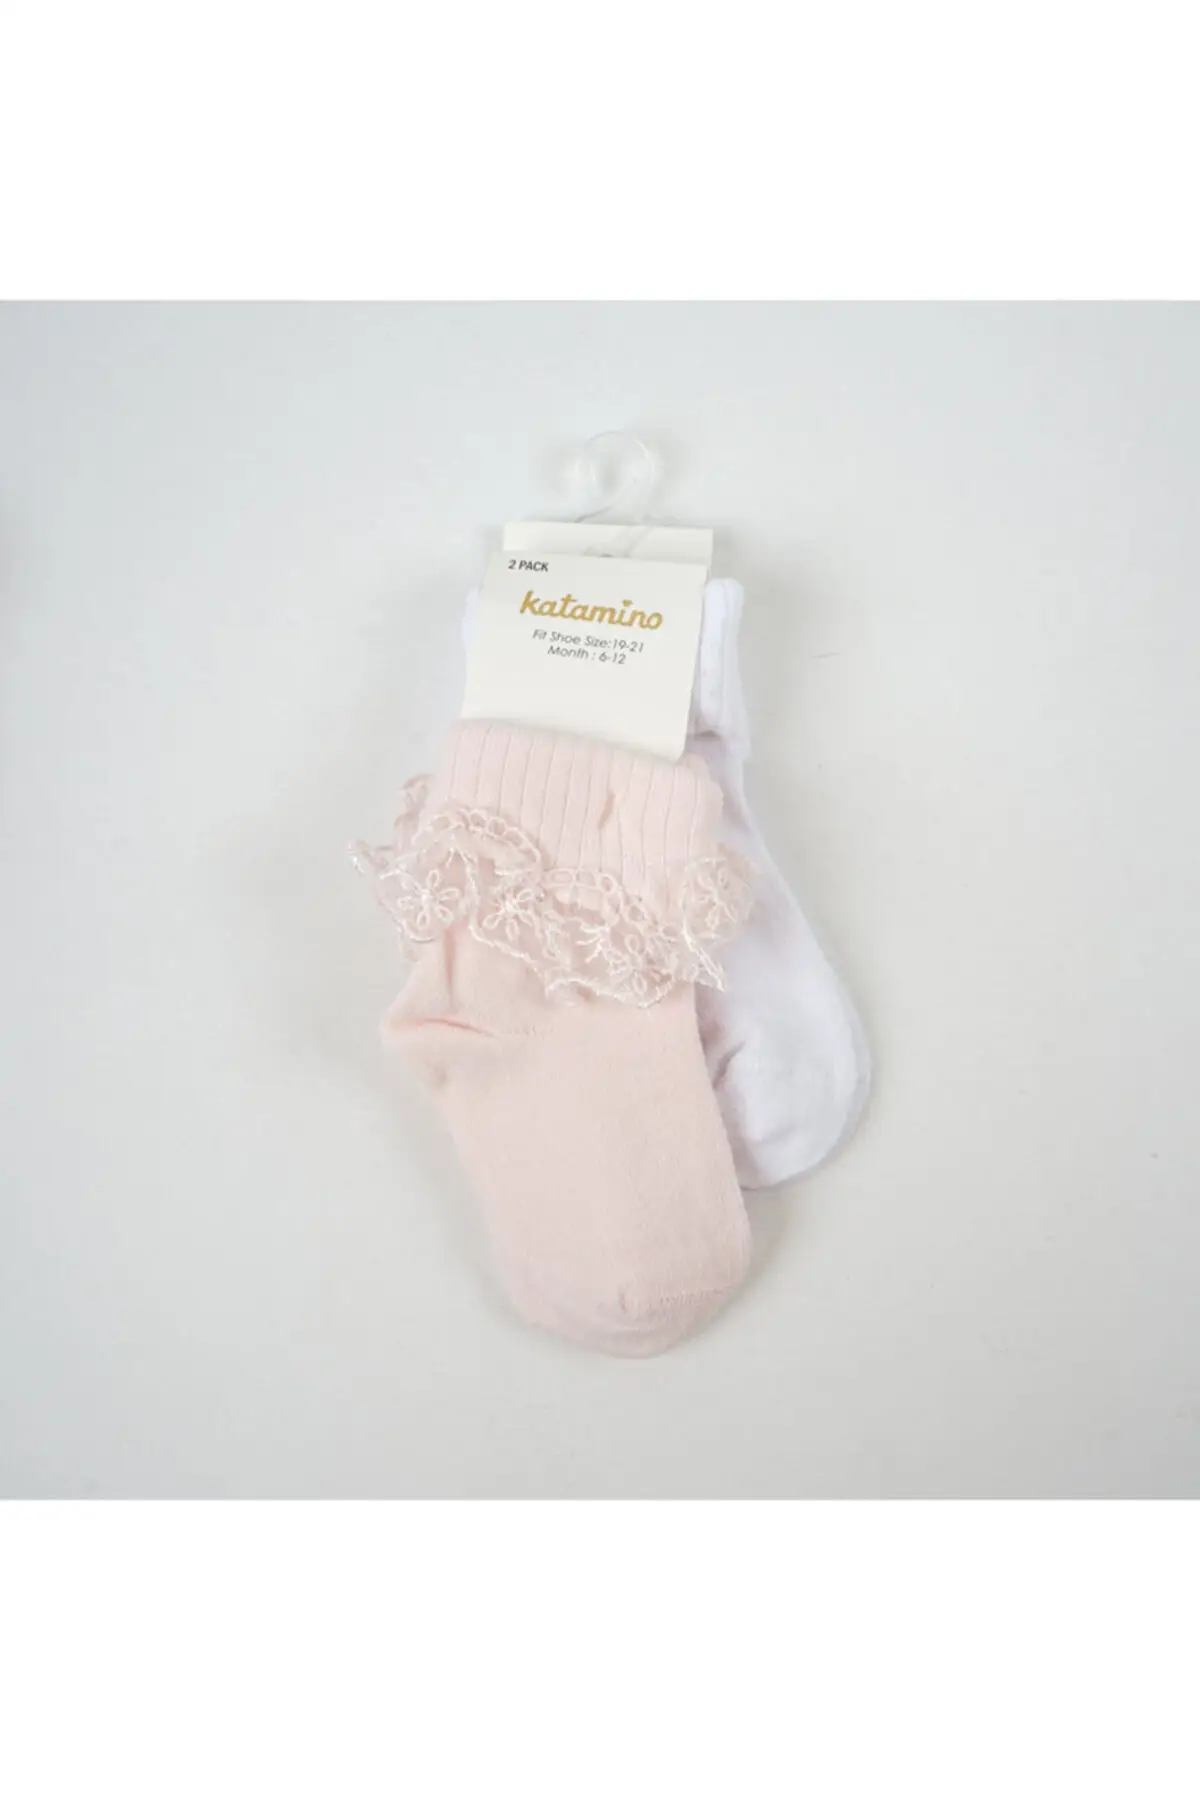 

Akel 2-piece baby socket socks cotton socks pink underwear